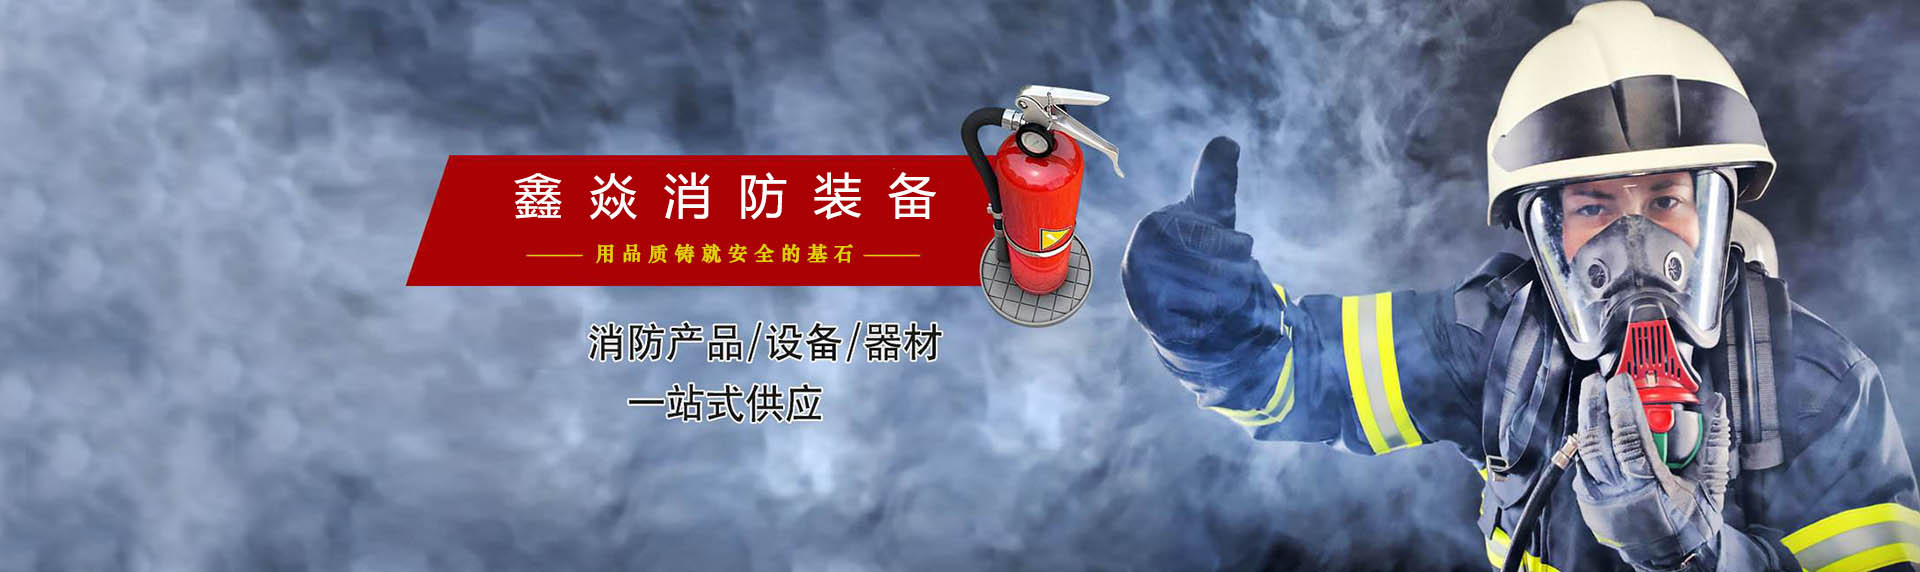 江苏鑫焱消防装备有限公司 